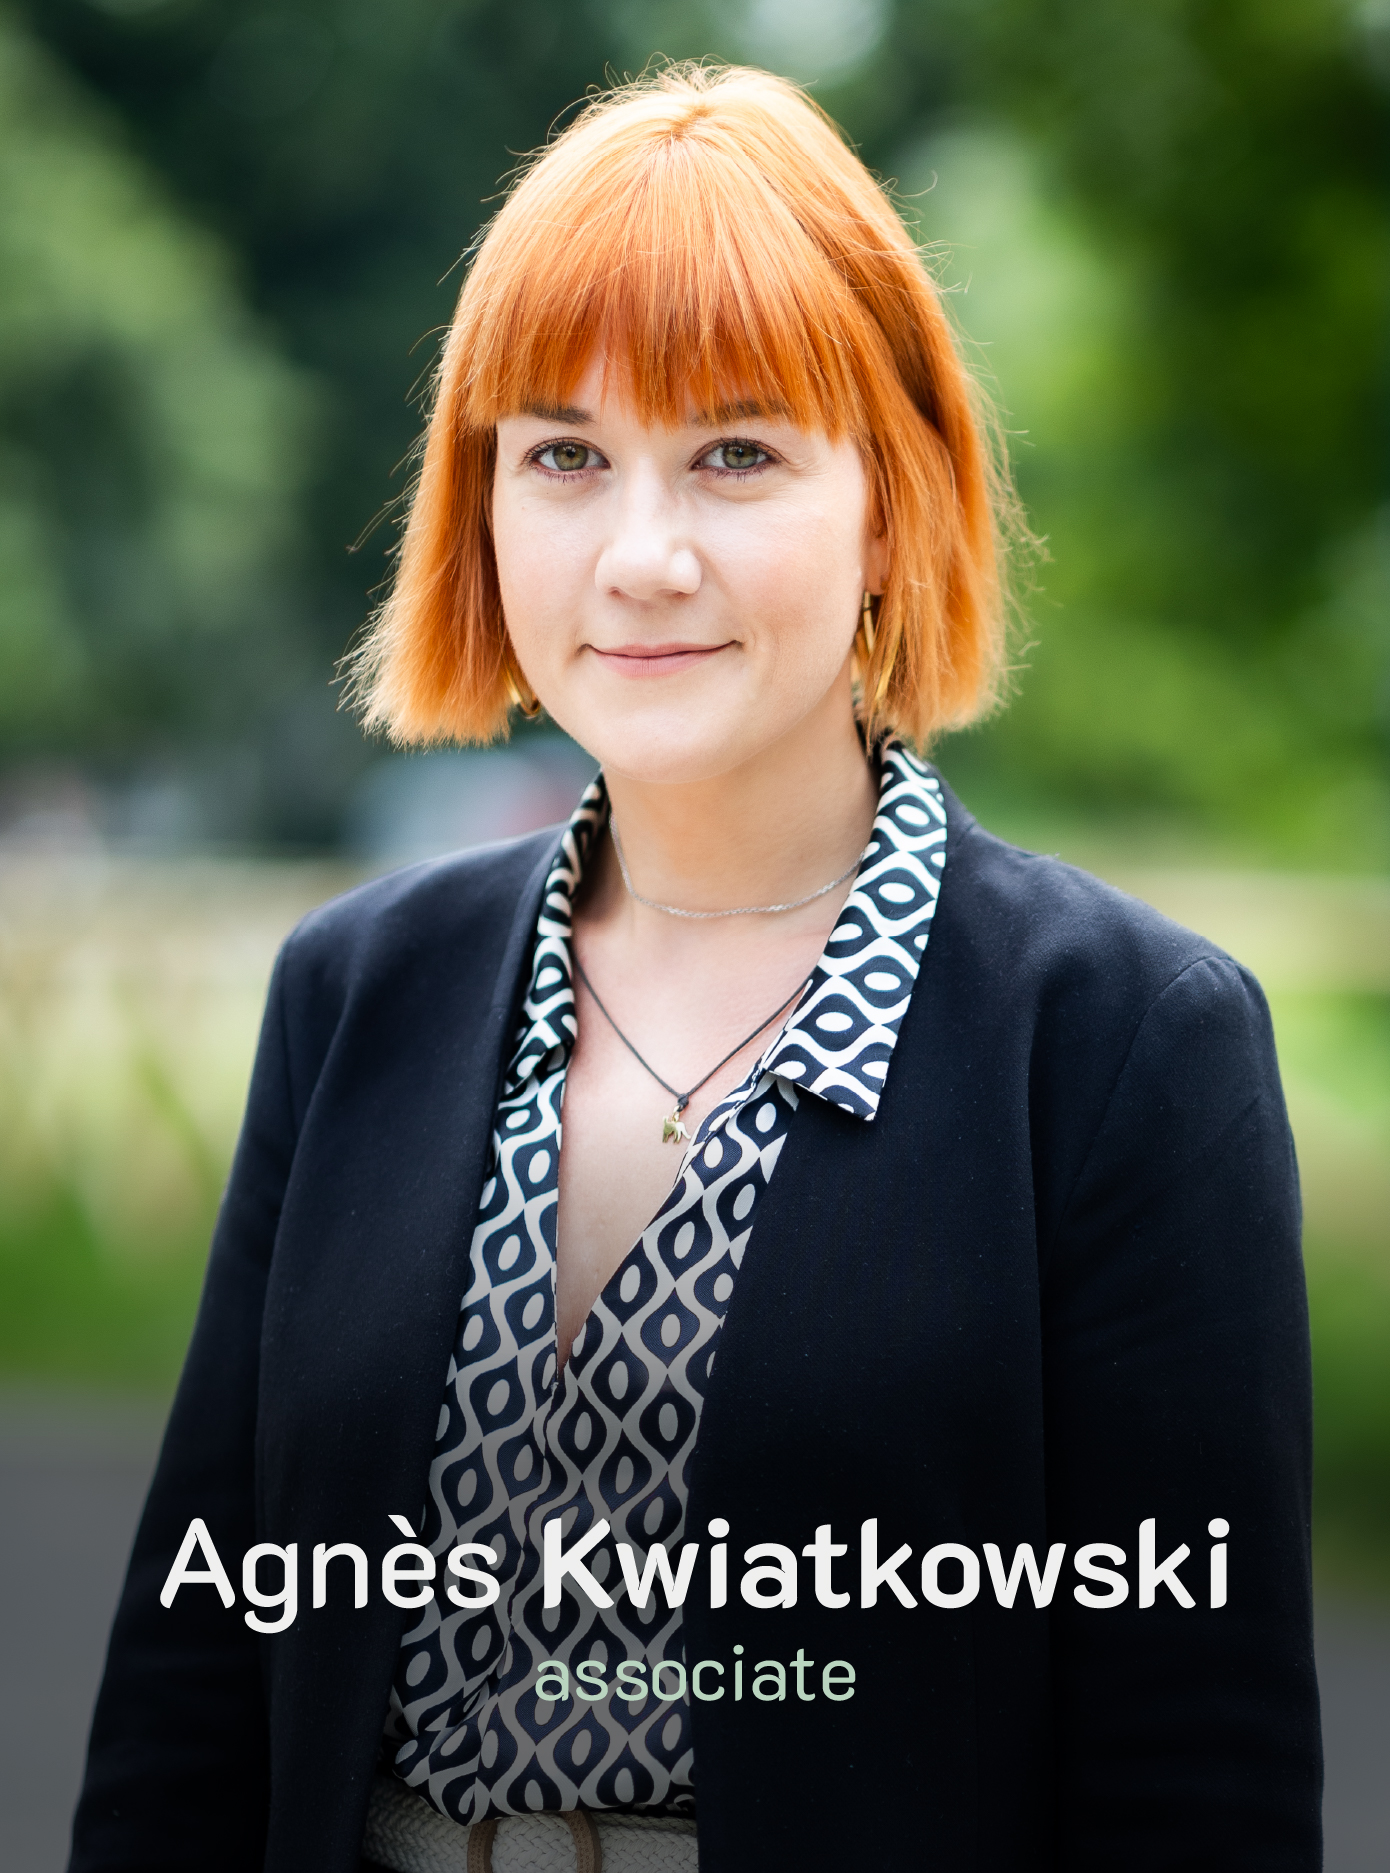 Agnès Kwiatkowski